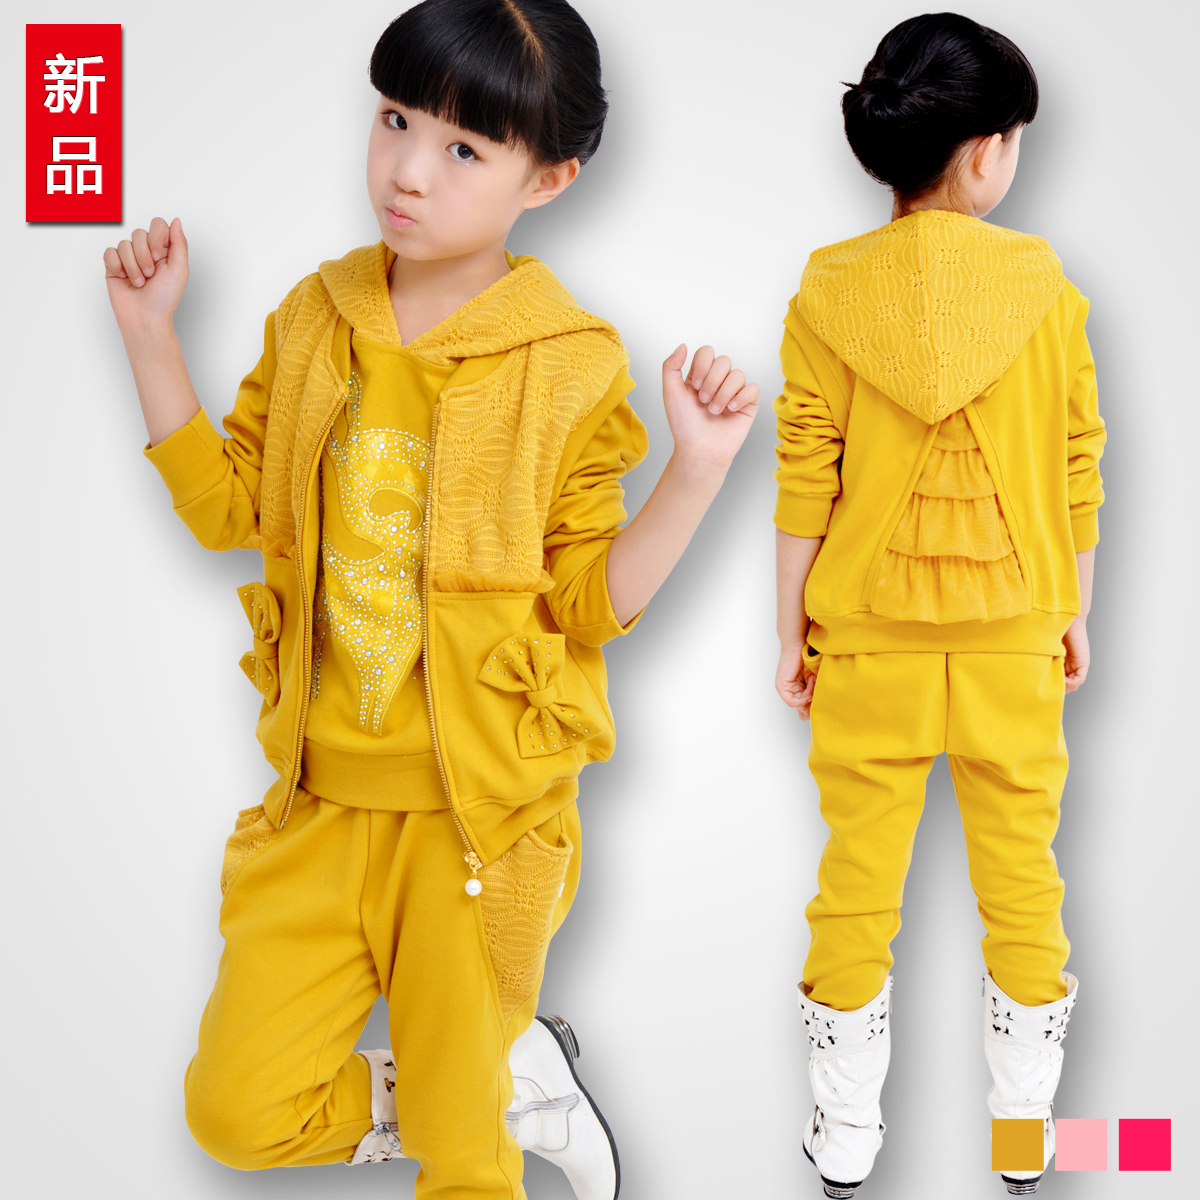 儿童女孩童装秋装2015 韩版新款女中大童休闲运动女童套装三件套